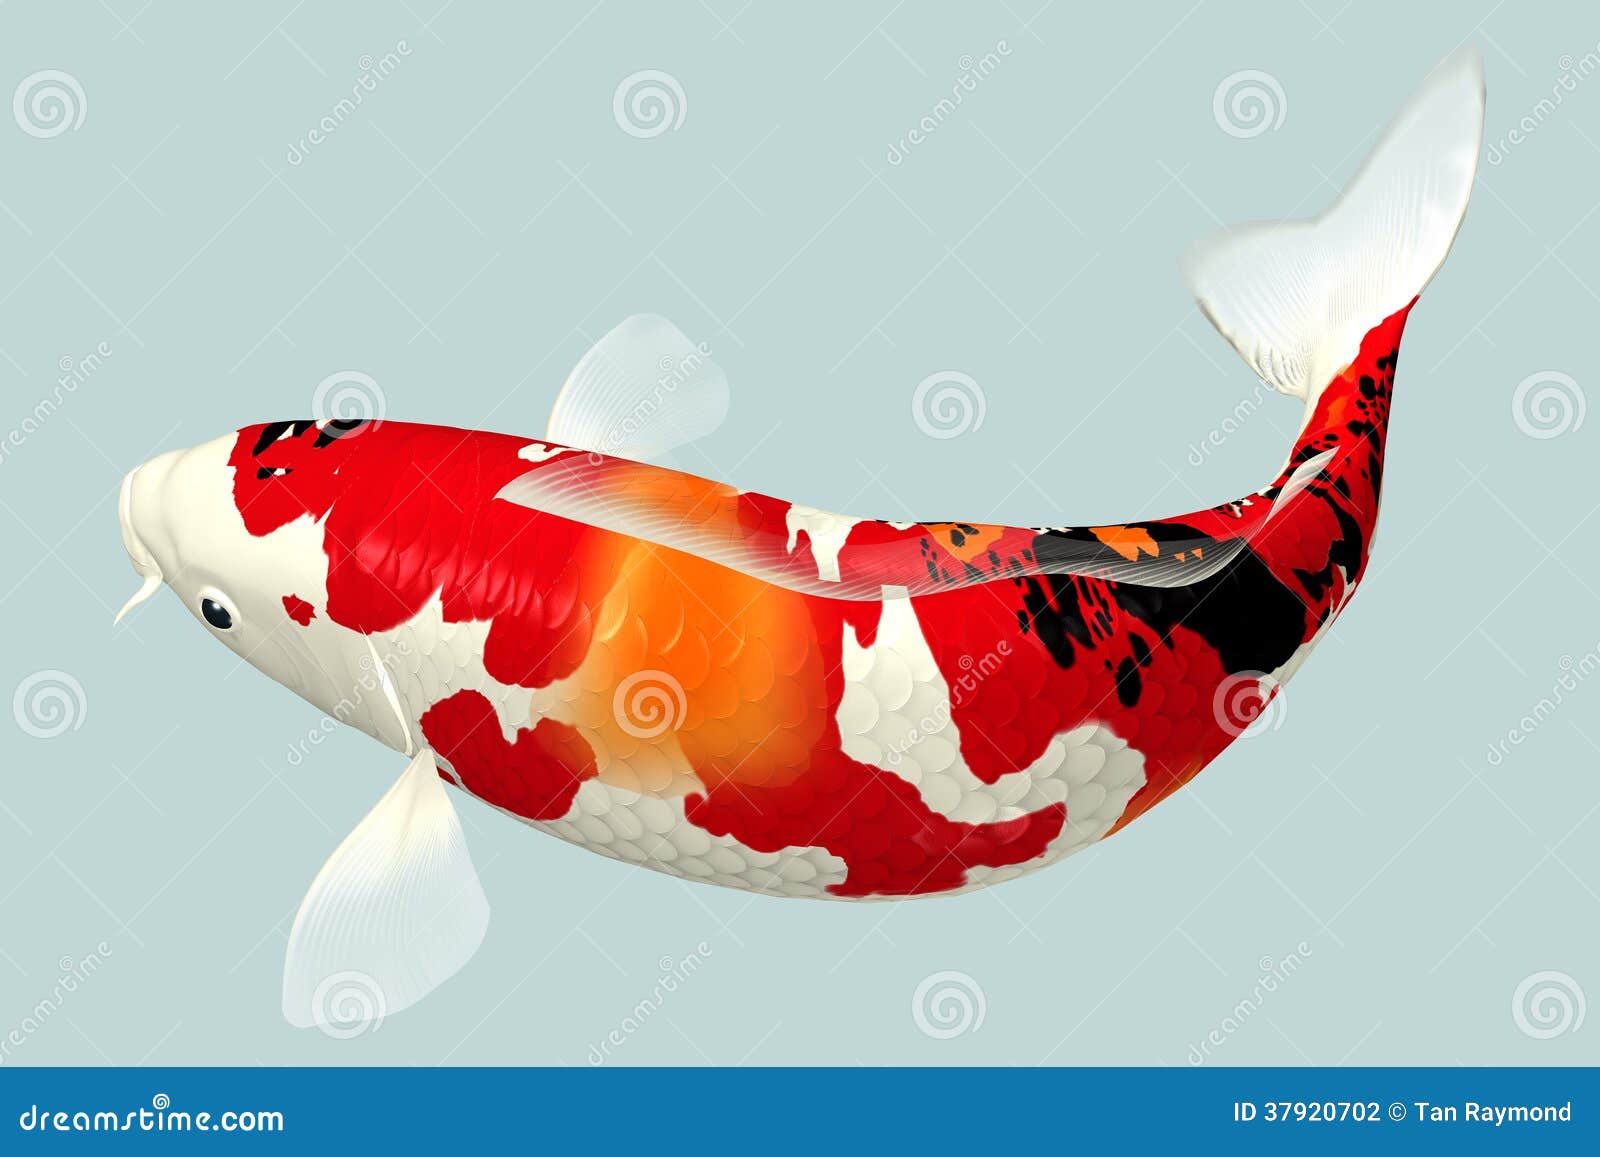 Koi Fish stock illustration. Illustration of aqua, animals - 37920702